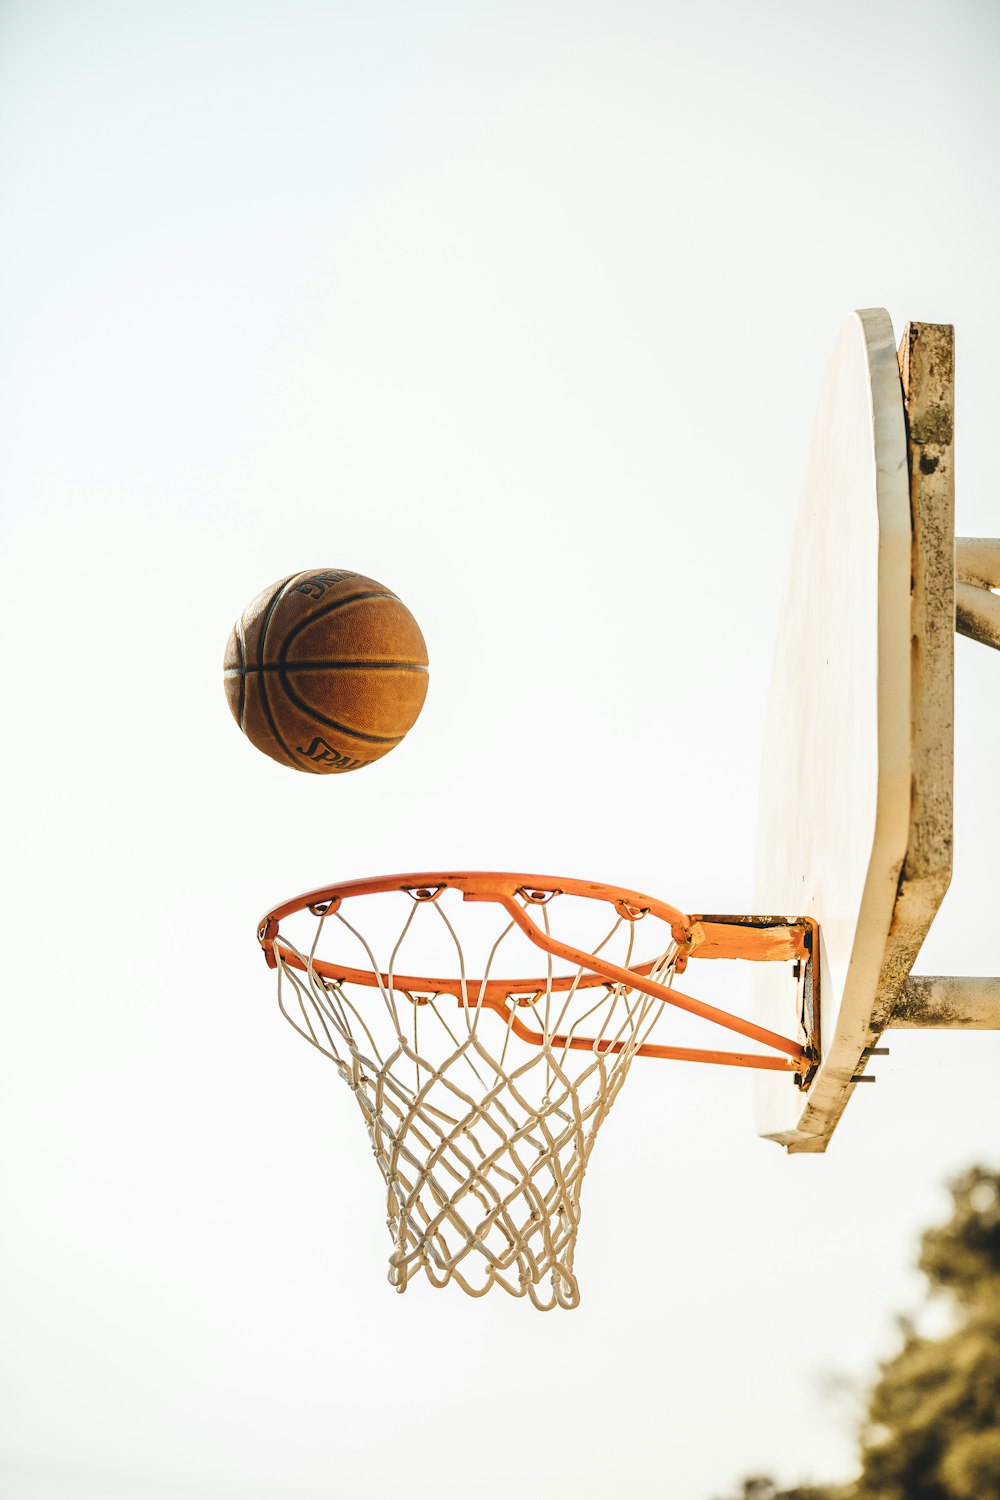 Basket sul canestro da basket con sfondo bianco foto – San francisco  Immagine gratuita su Unsplash